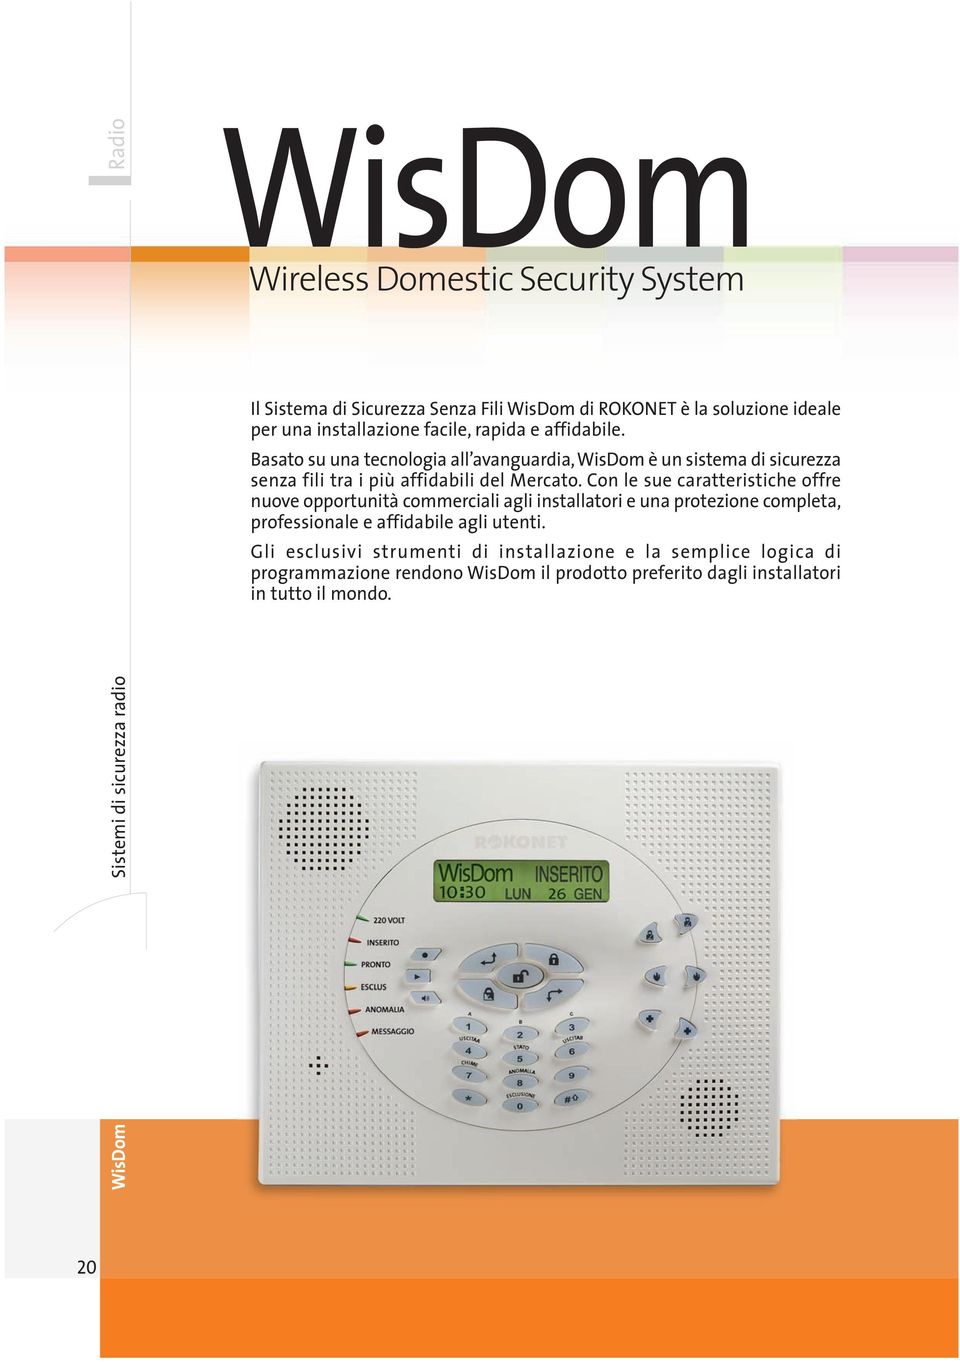 Basato su una tecnologia all avanguardia, WisDom è un sistema di sicurezza senza fili tra i più affidabili del Mercato.